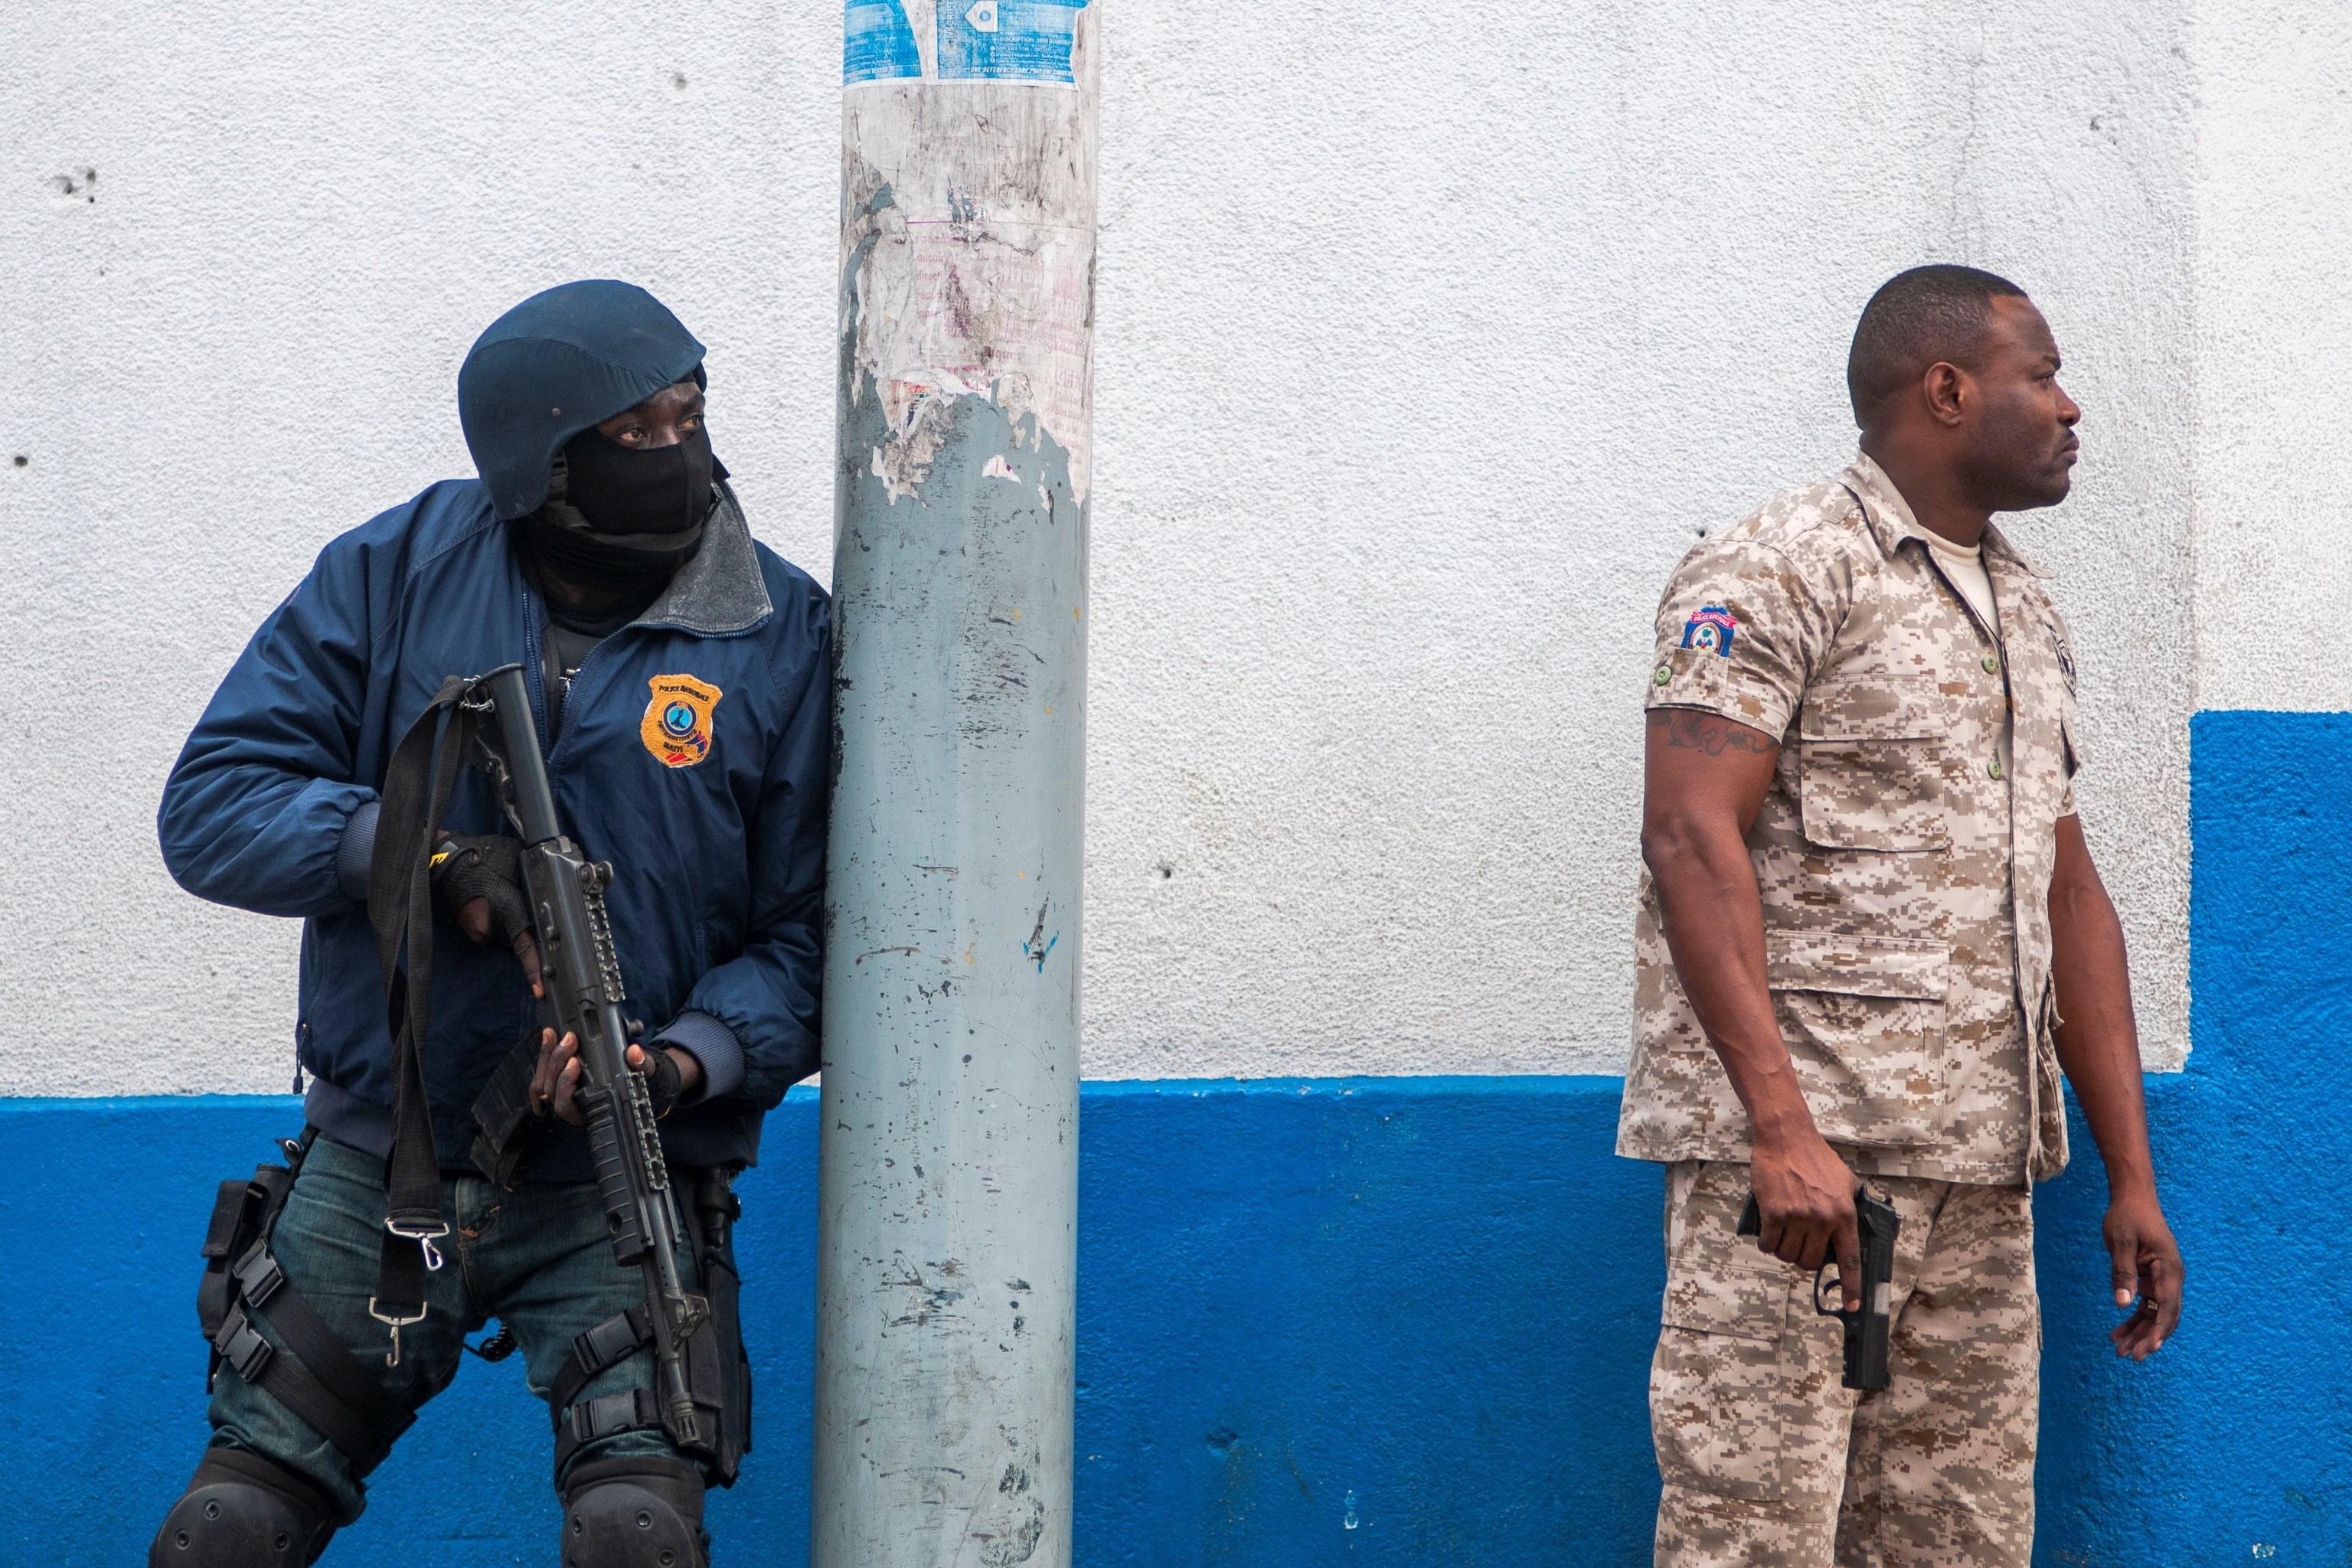 Le forze di sicurezza haitiane seguono armate la protesta di Port-au-Prince